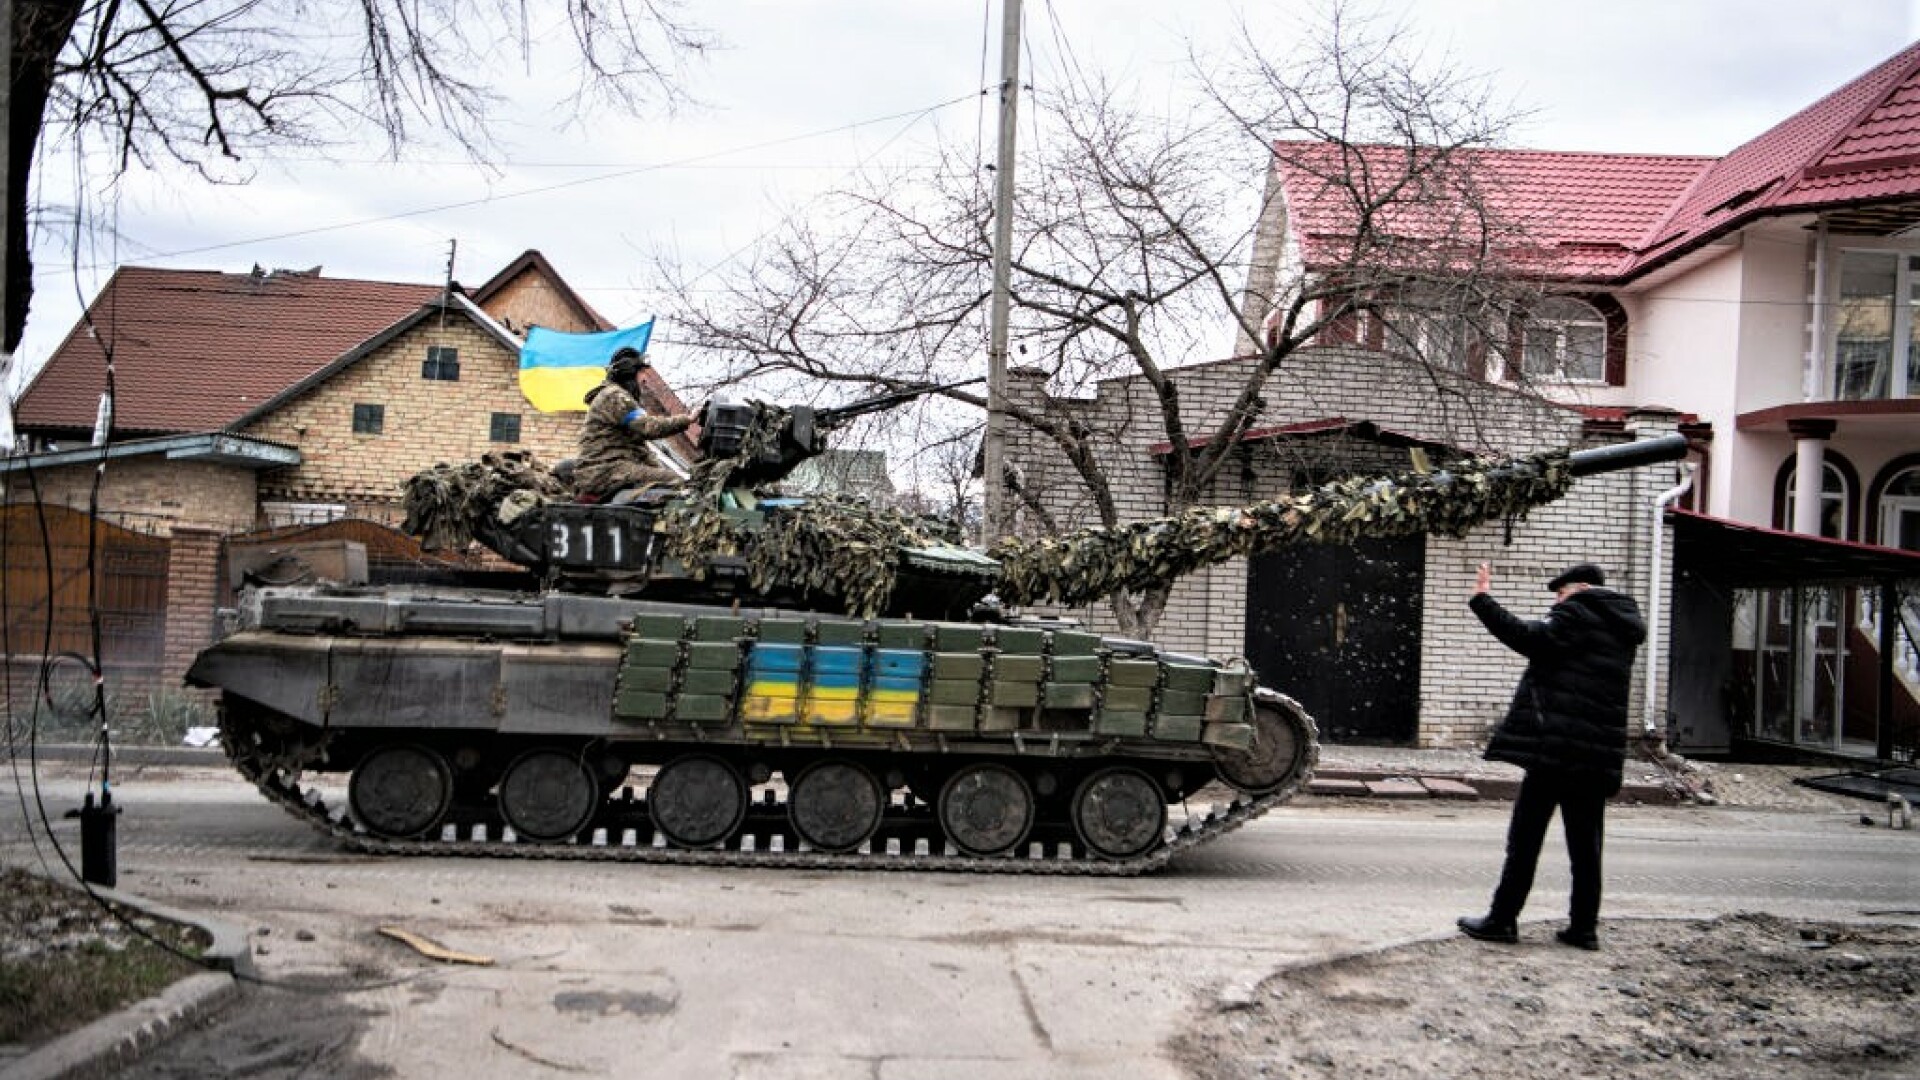 Kremlinul anunță că trupele sale au distrus în Kiev tancuri și blindate trimise de Occident